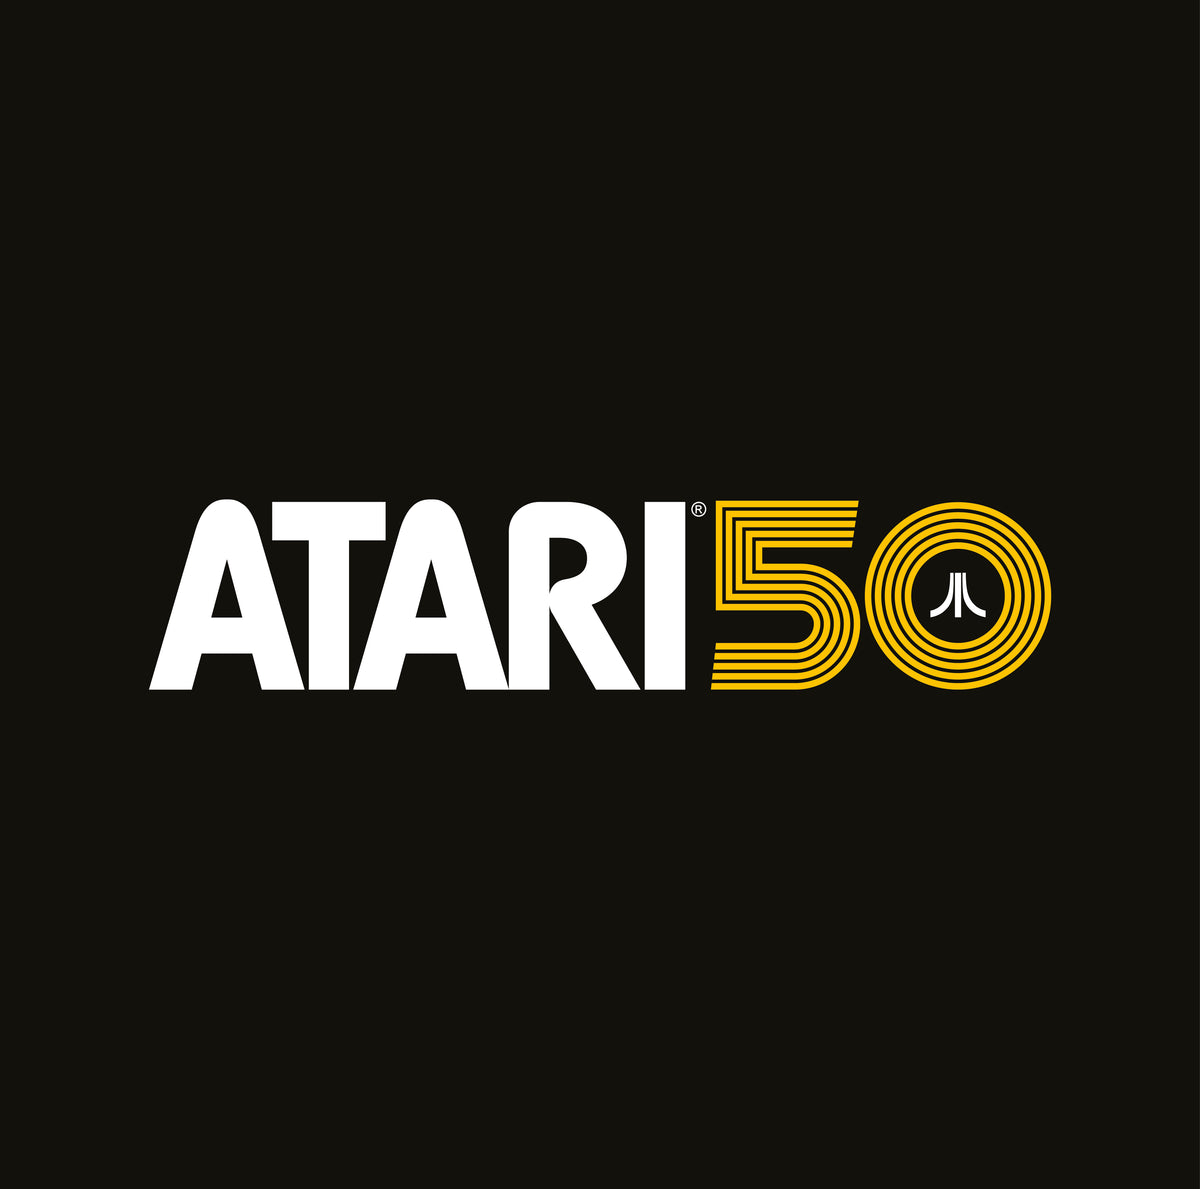 ATARI 50